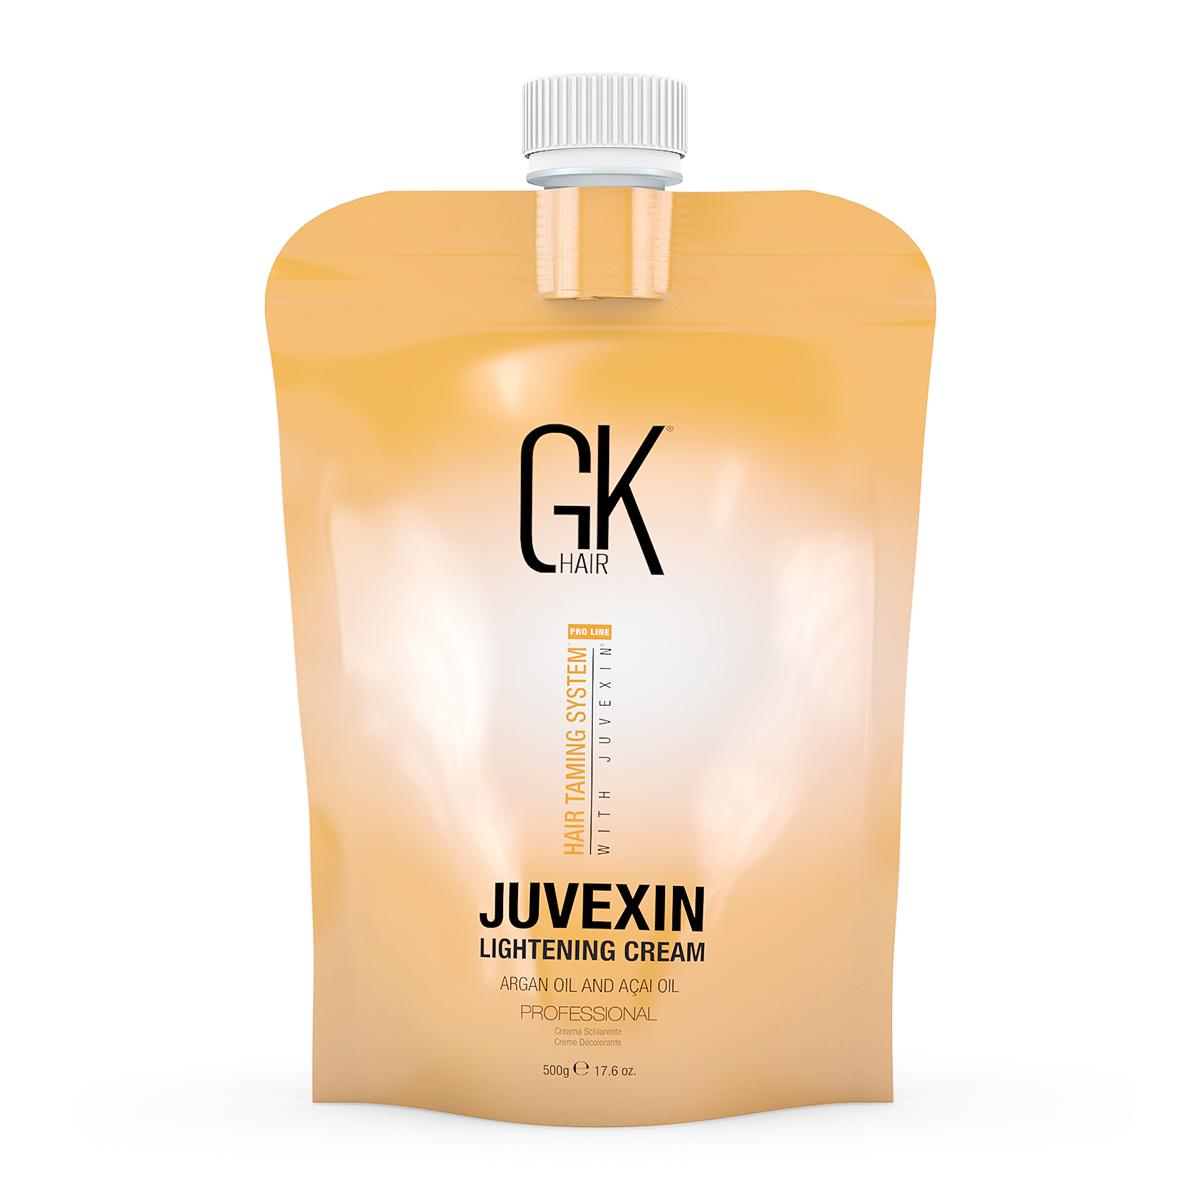 GK Hair Juvexin Lightening Cream , 500g - Modish7